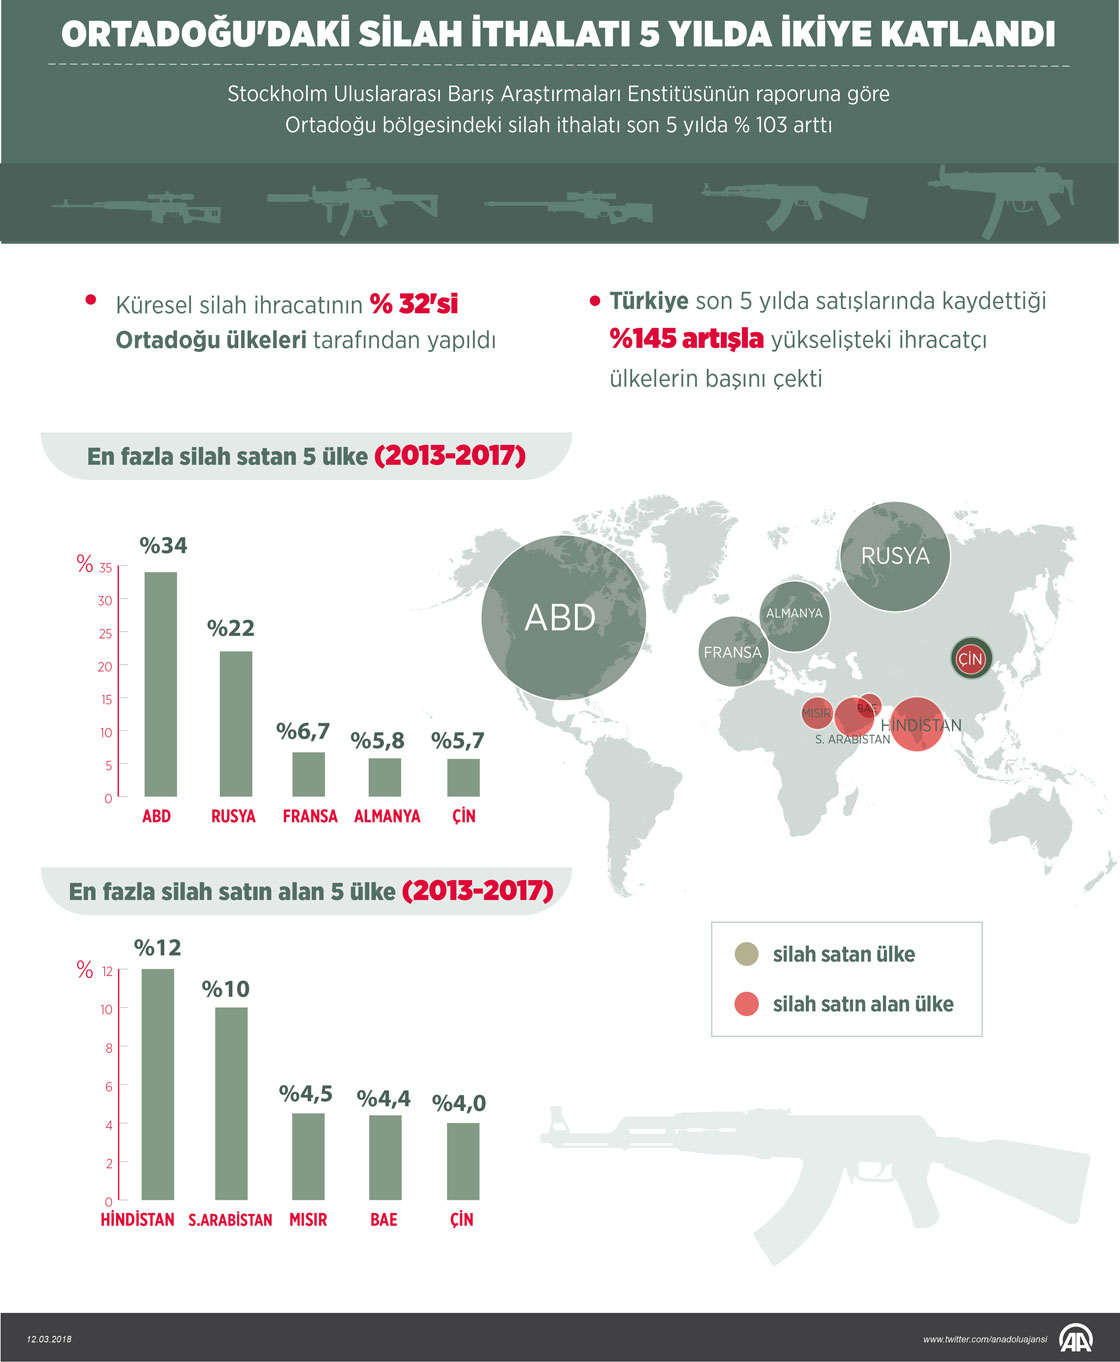 Ortadoğu'daki silah ithalatı 5 yılda ikiye katlandı